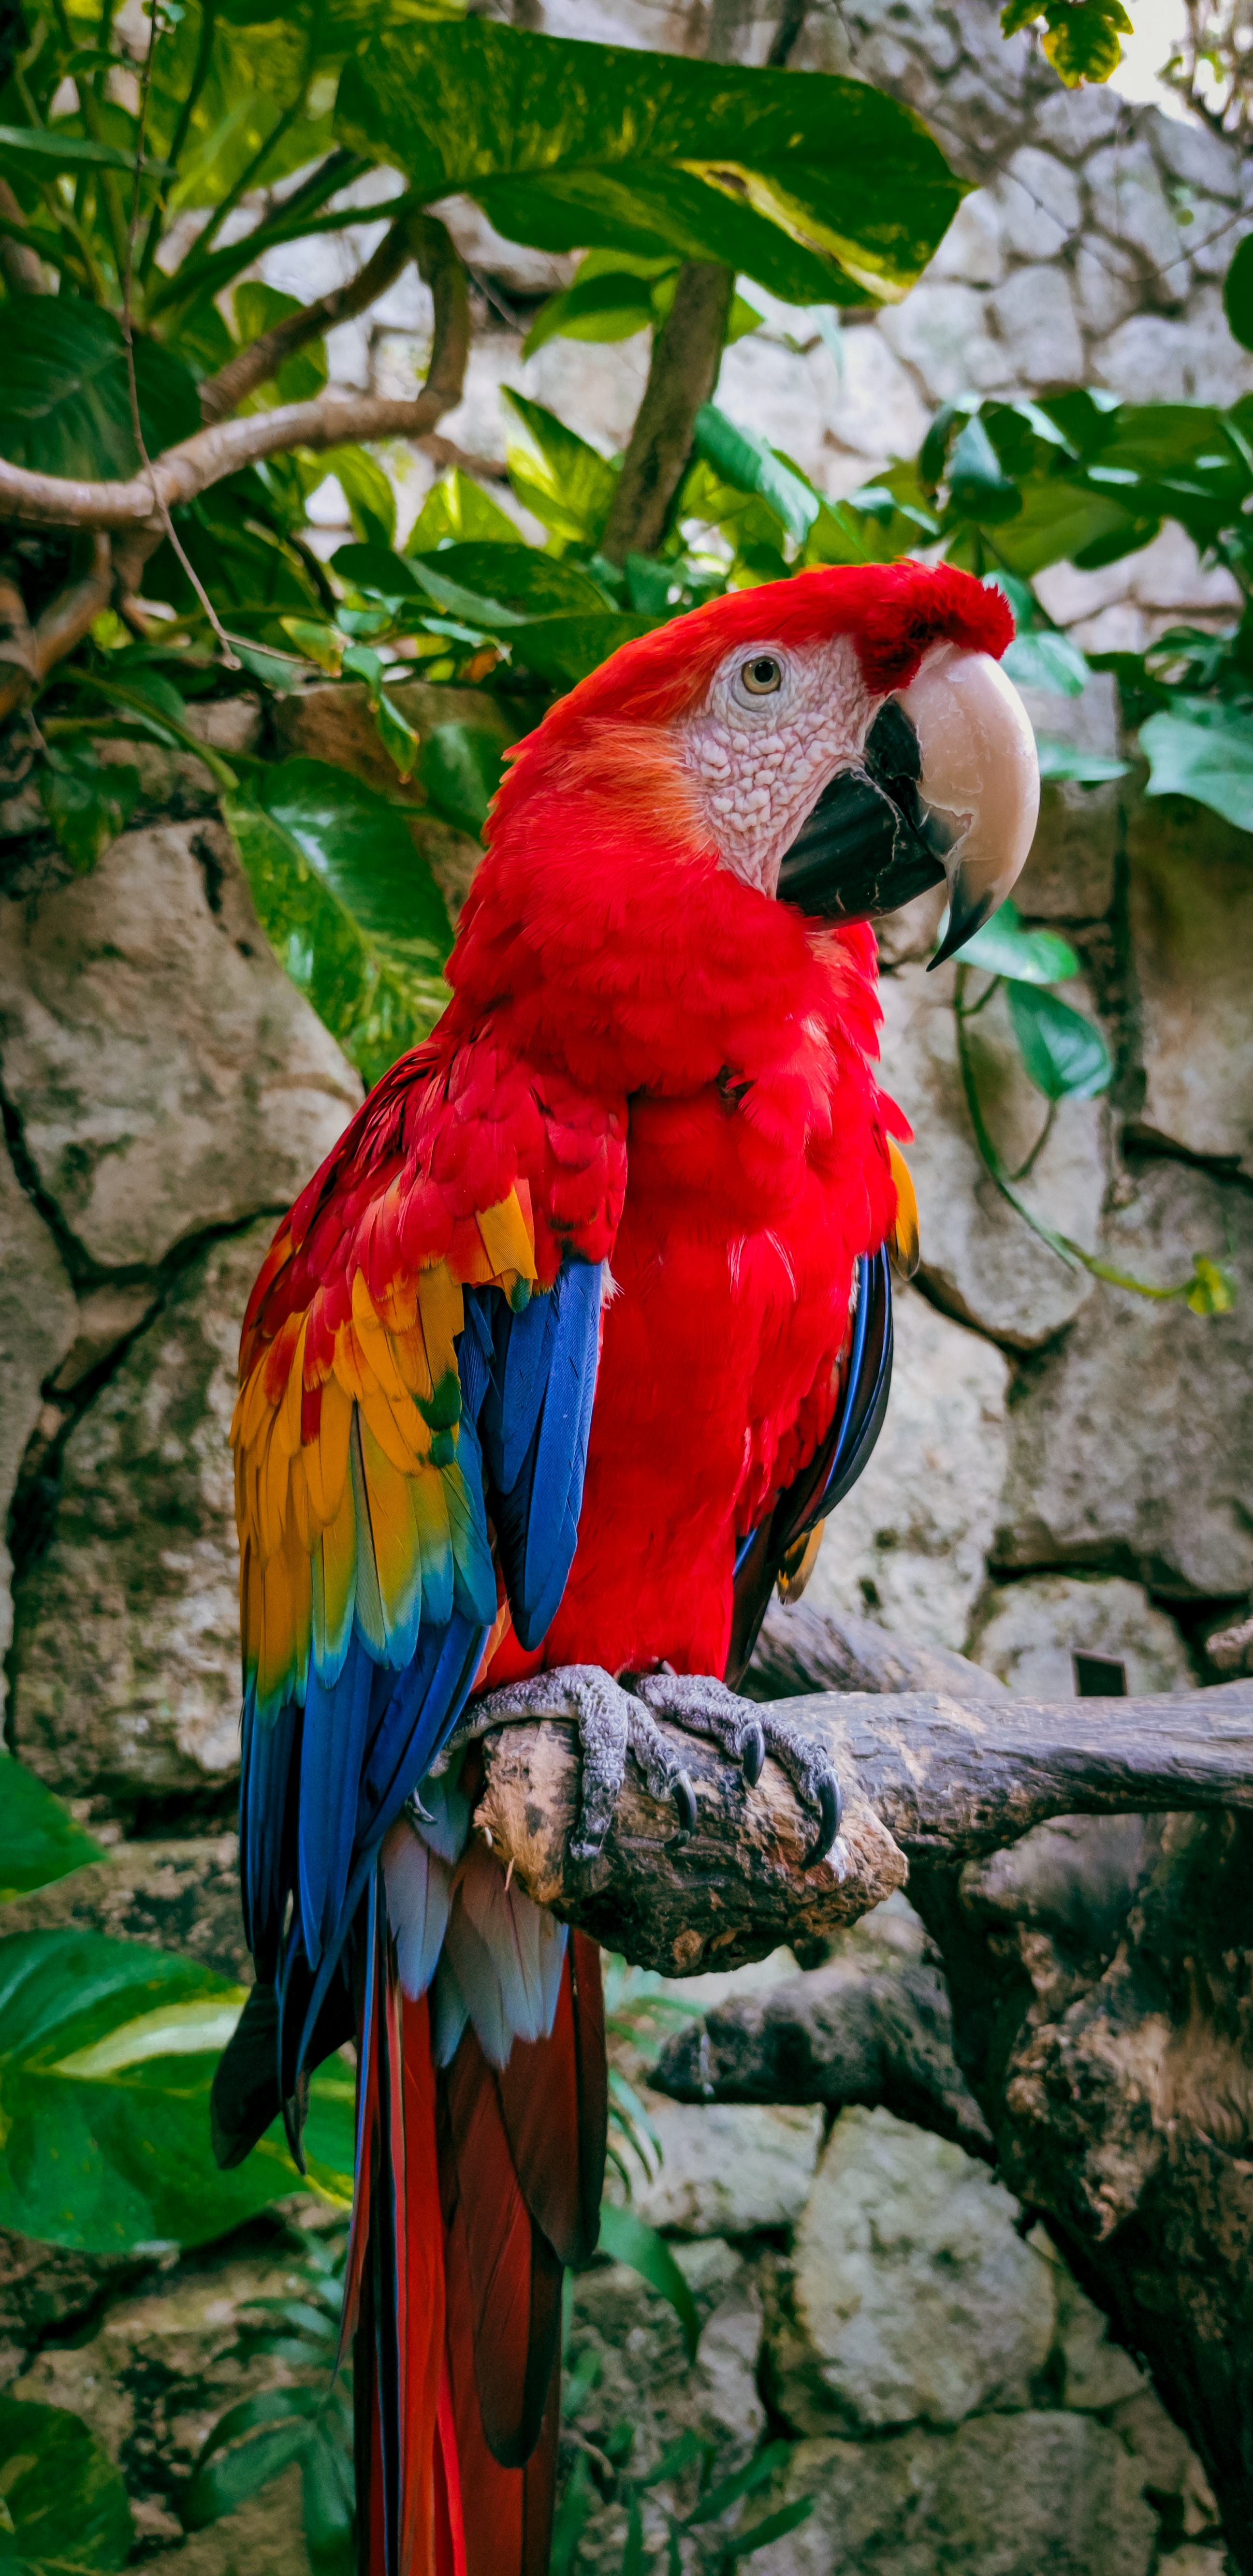 8k Parrots Images